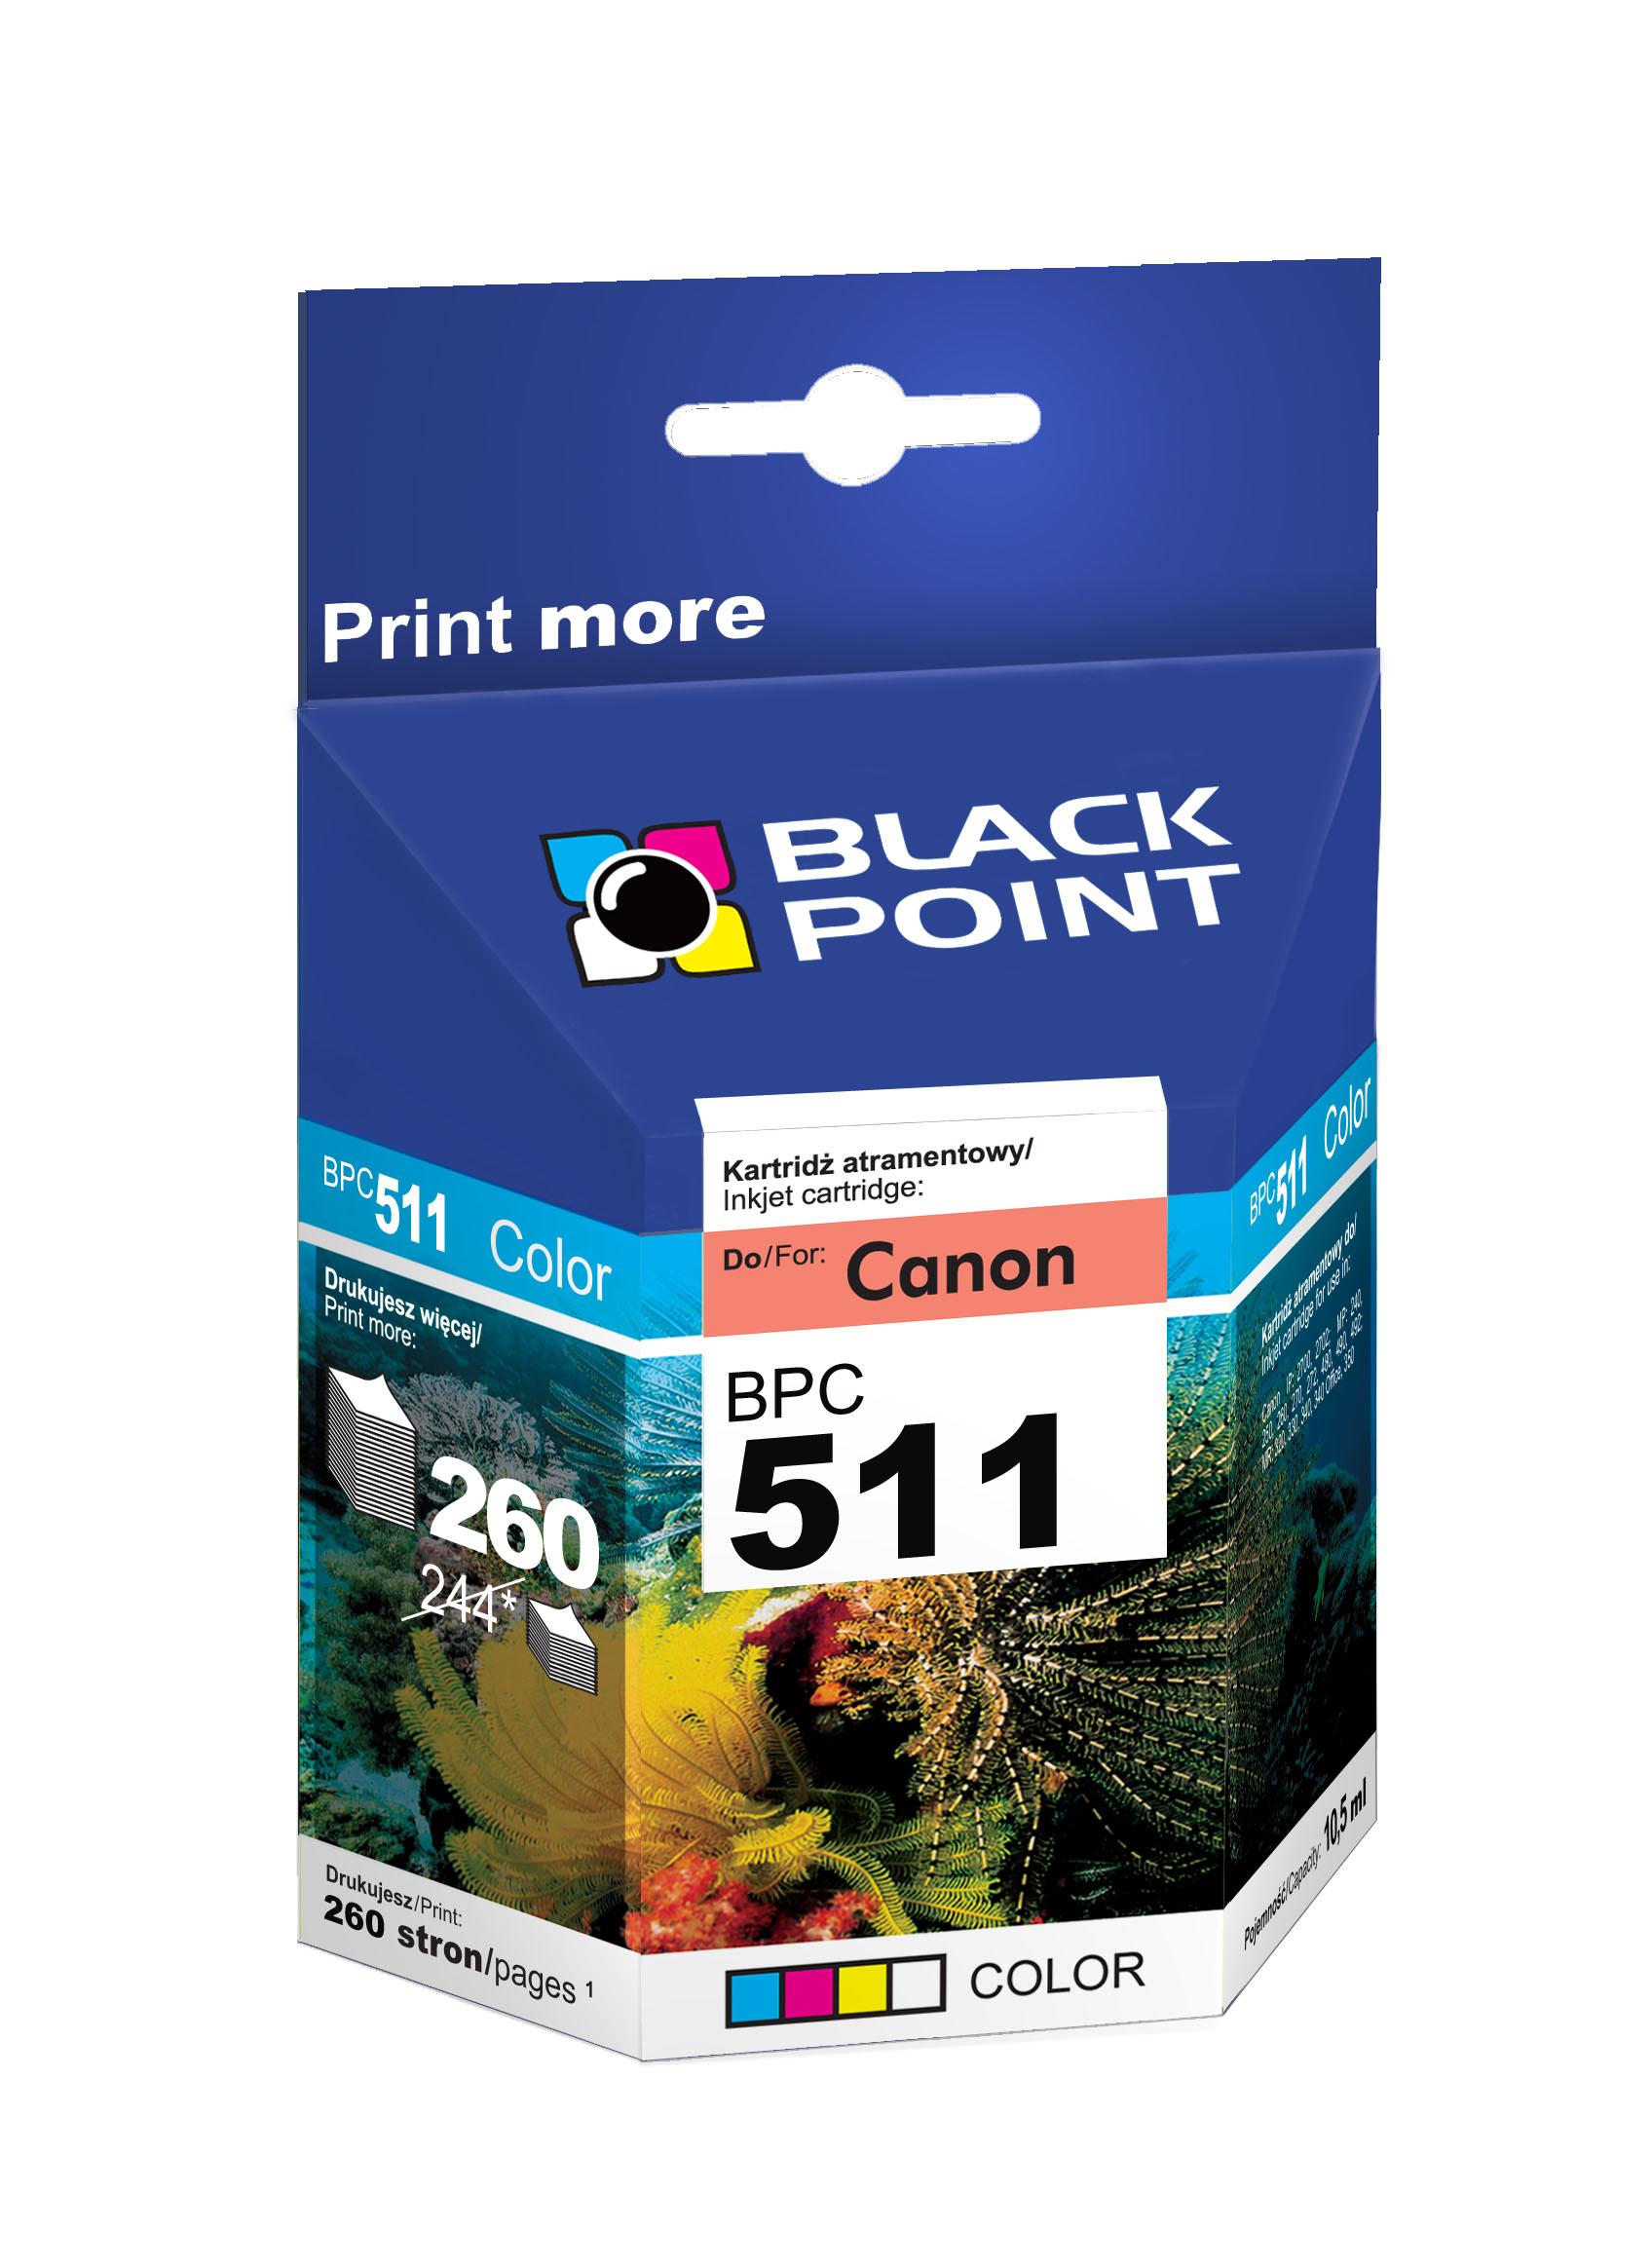 CMYK - Black Point tusz BPC511 zastpuje Canon CL-511, trjkolorowy